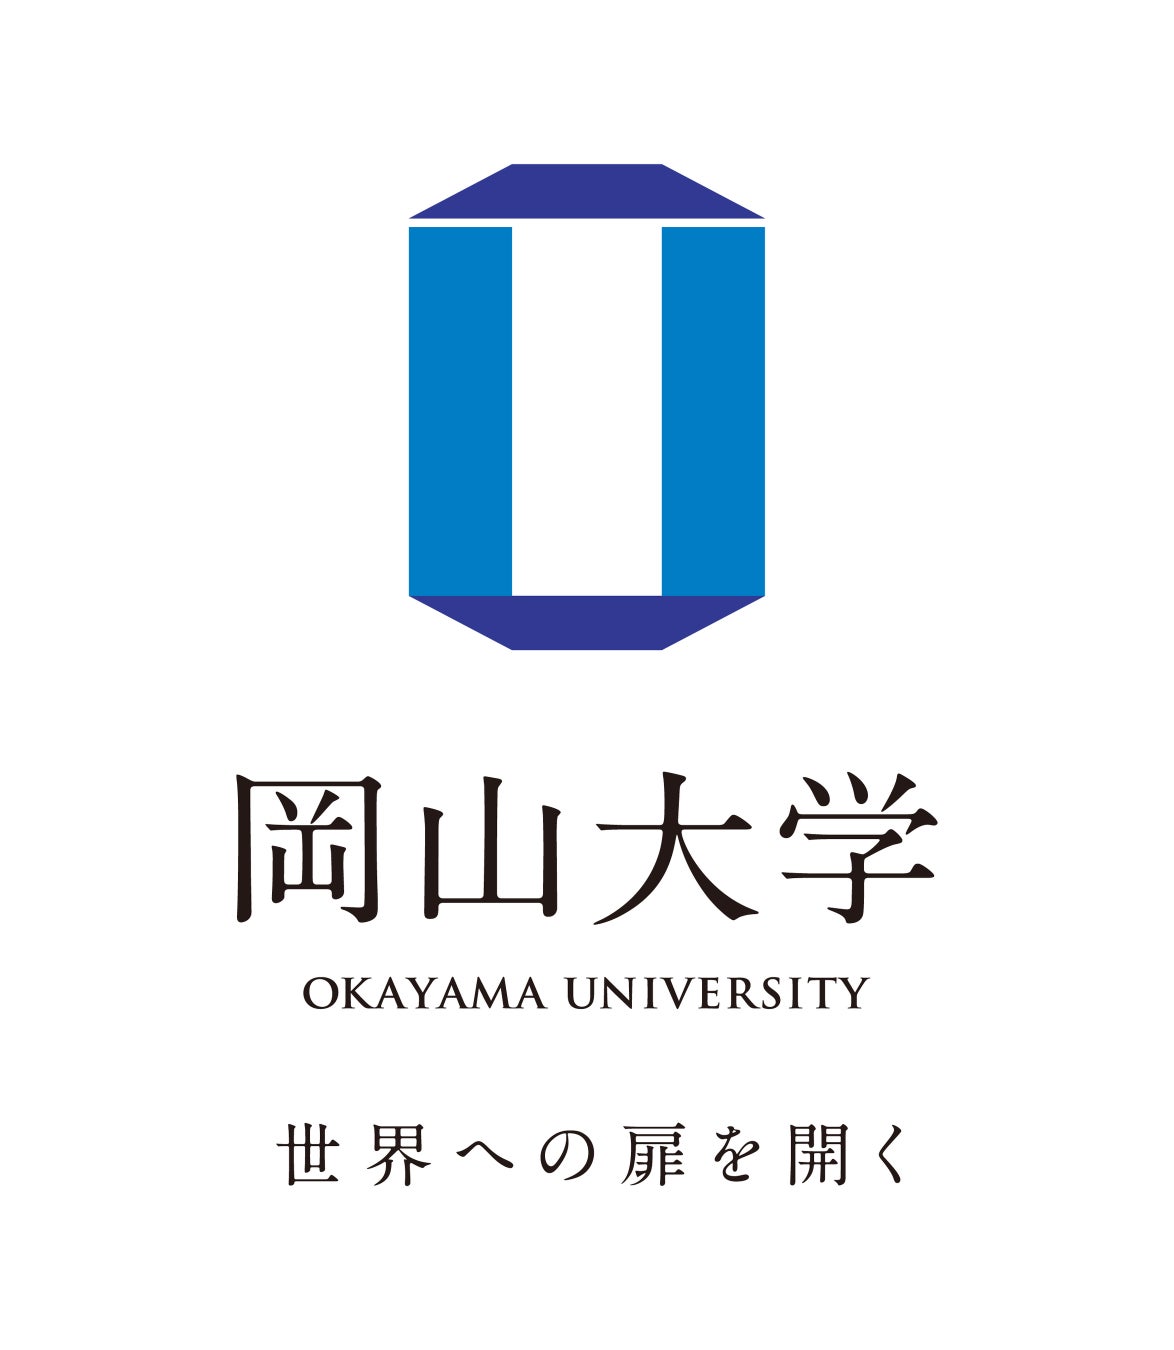 【岡山大学】2025年度岡山大学入学者選抜方法の変更について（2024年度実施）（第4回目）